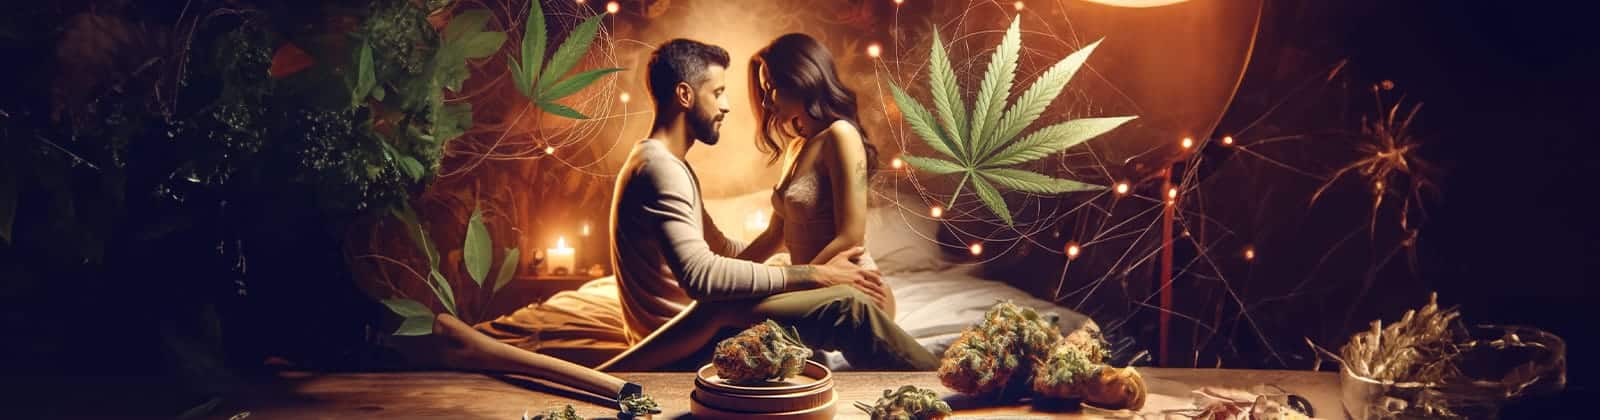 Cannabis und Sex kann neue Ebenen eröffnen. So sieht das Thema nach einer bekannten K.I. aus